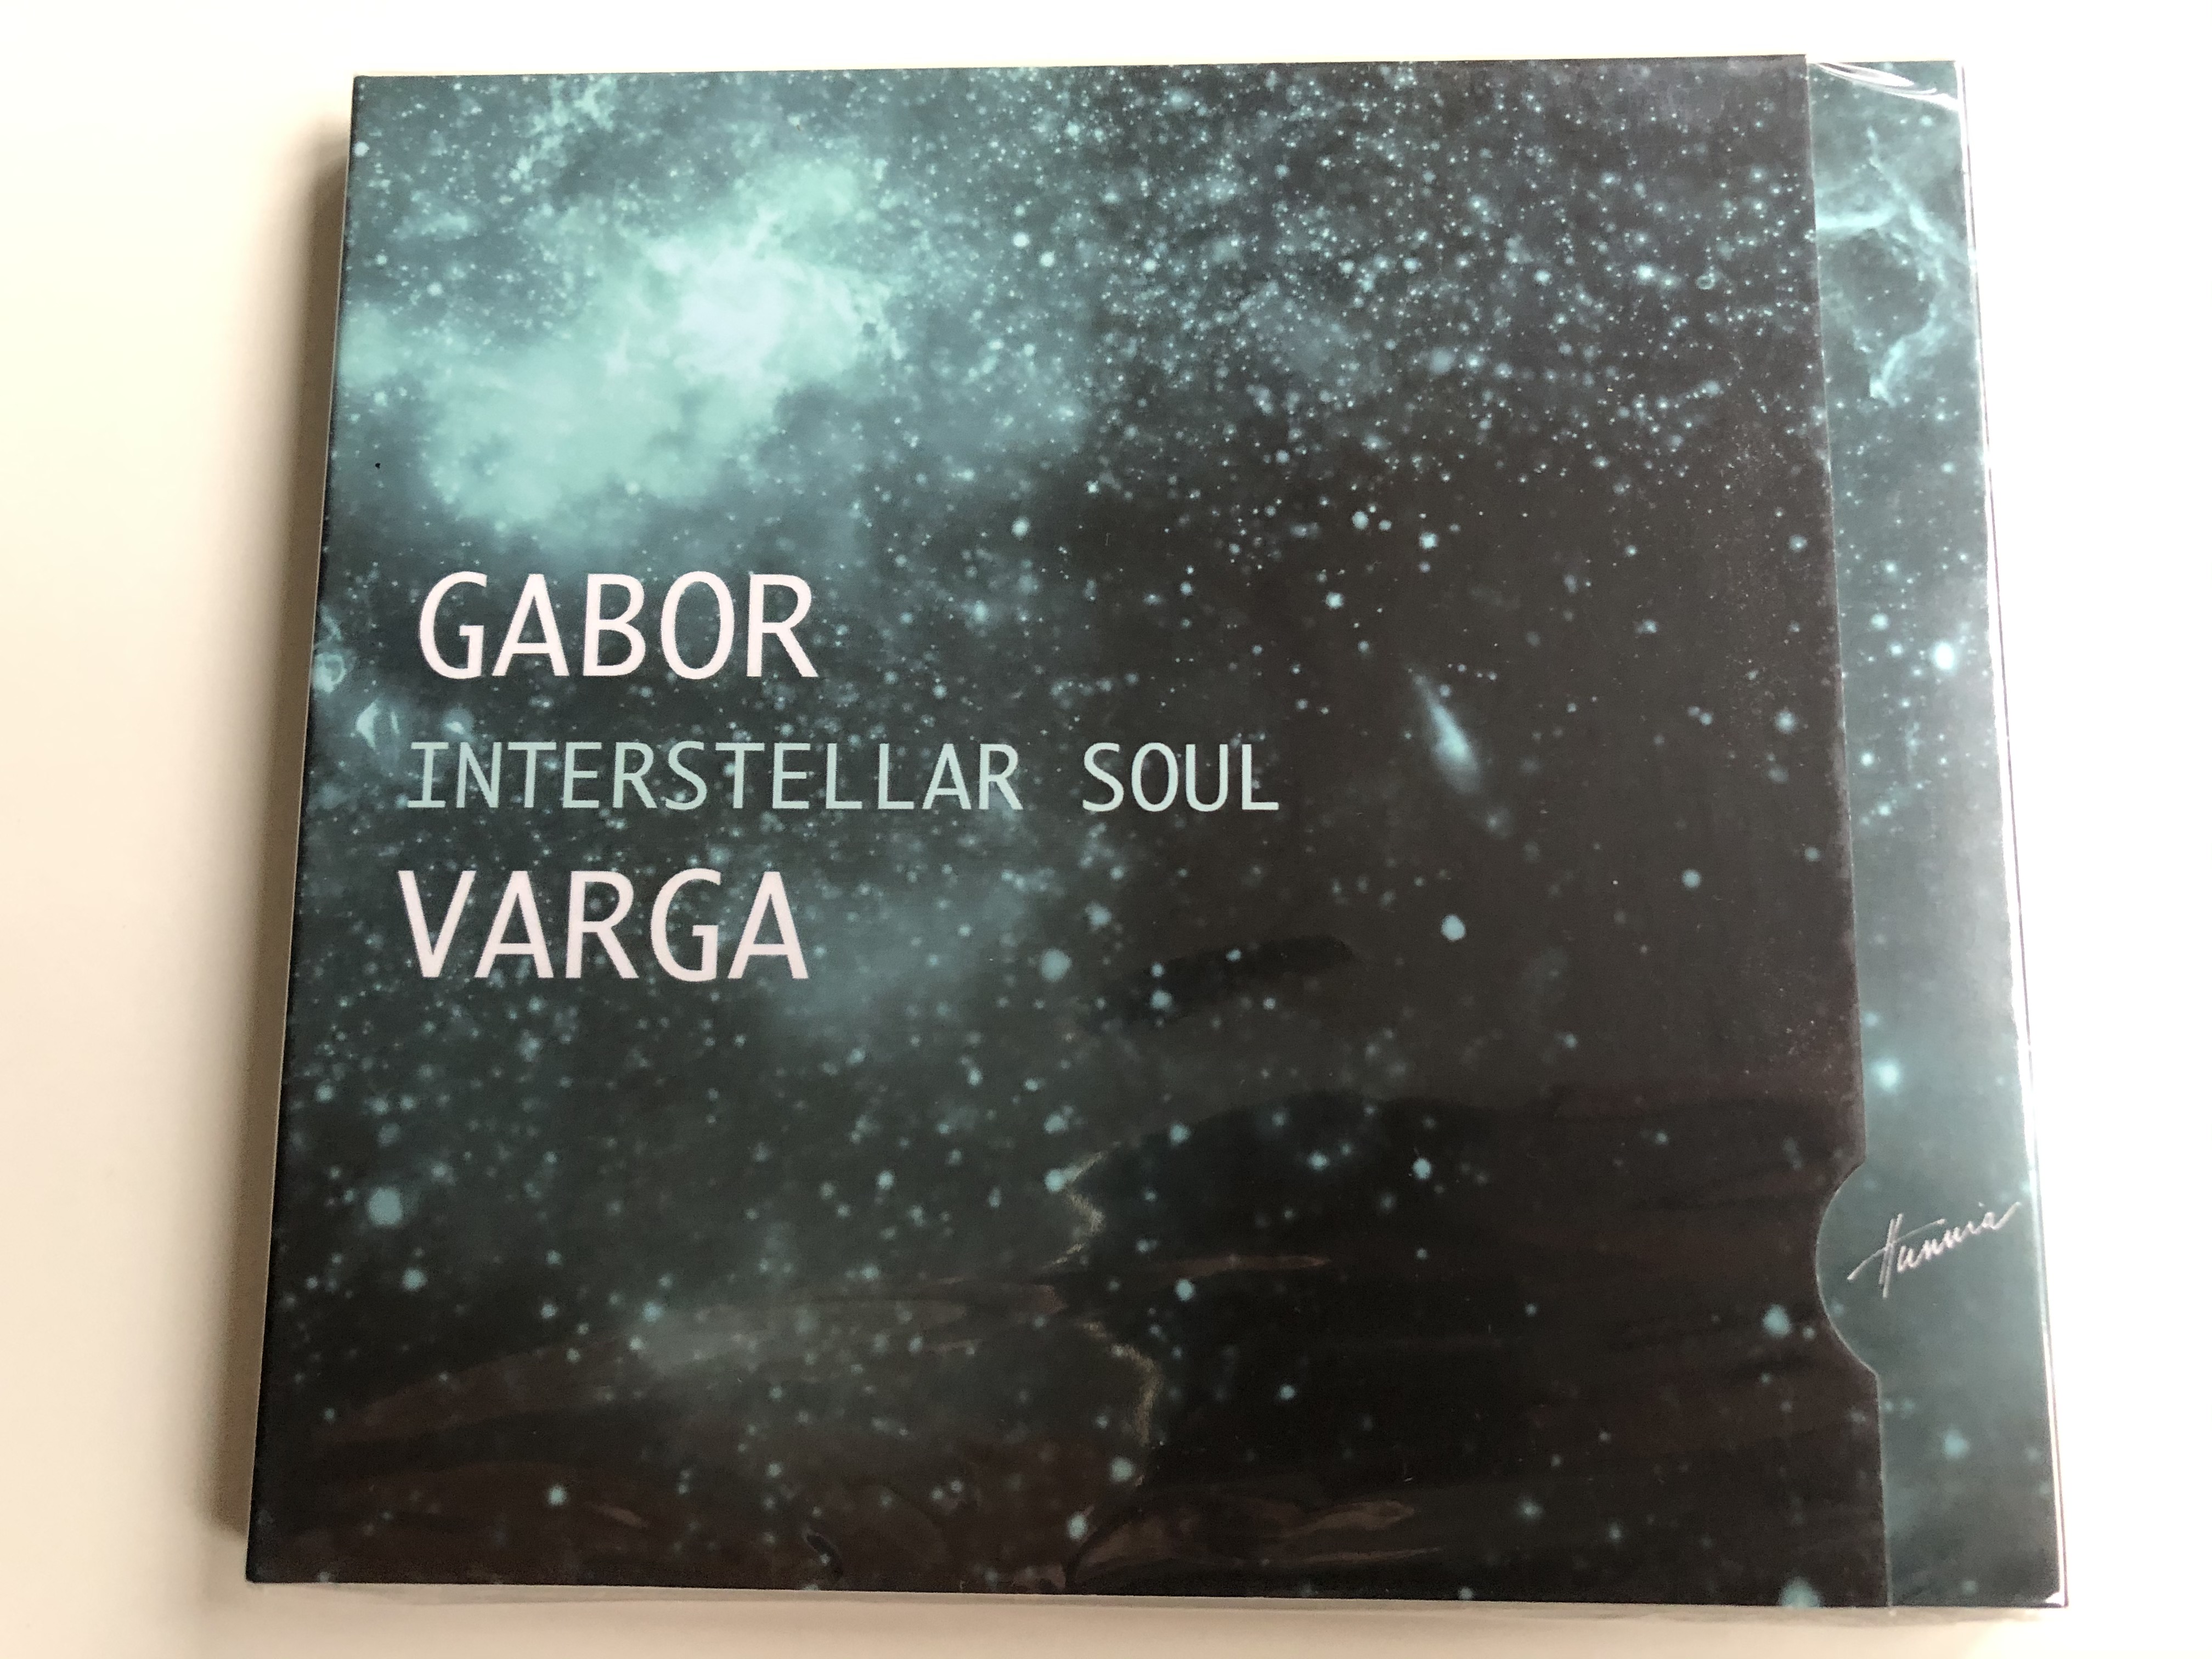 gabor-varga-interstellar-soul-hunnia-records-film-production-audio-cd-2017-hrcd1710-1-.jpg